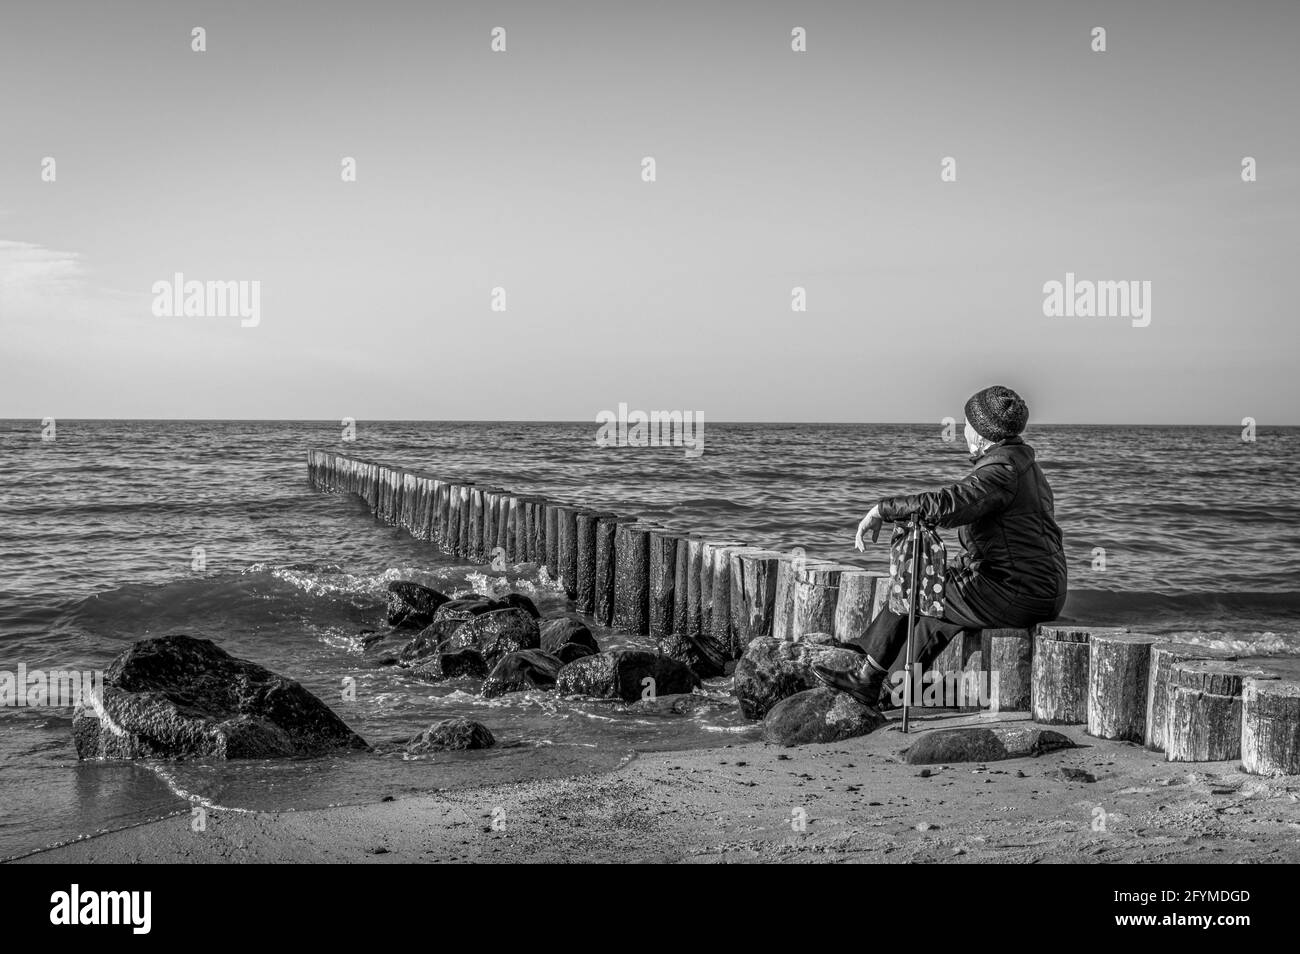 Vieille dame avec une canne assise sur le bord de mer et regardant à l'horizon. Noir et blanc. Banque D'Images